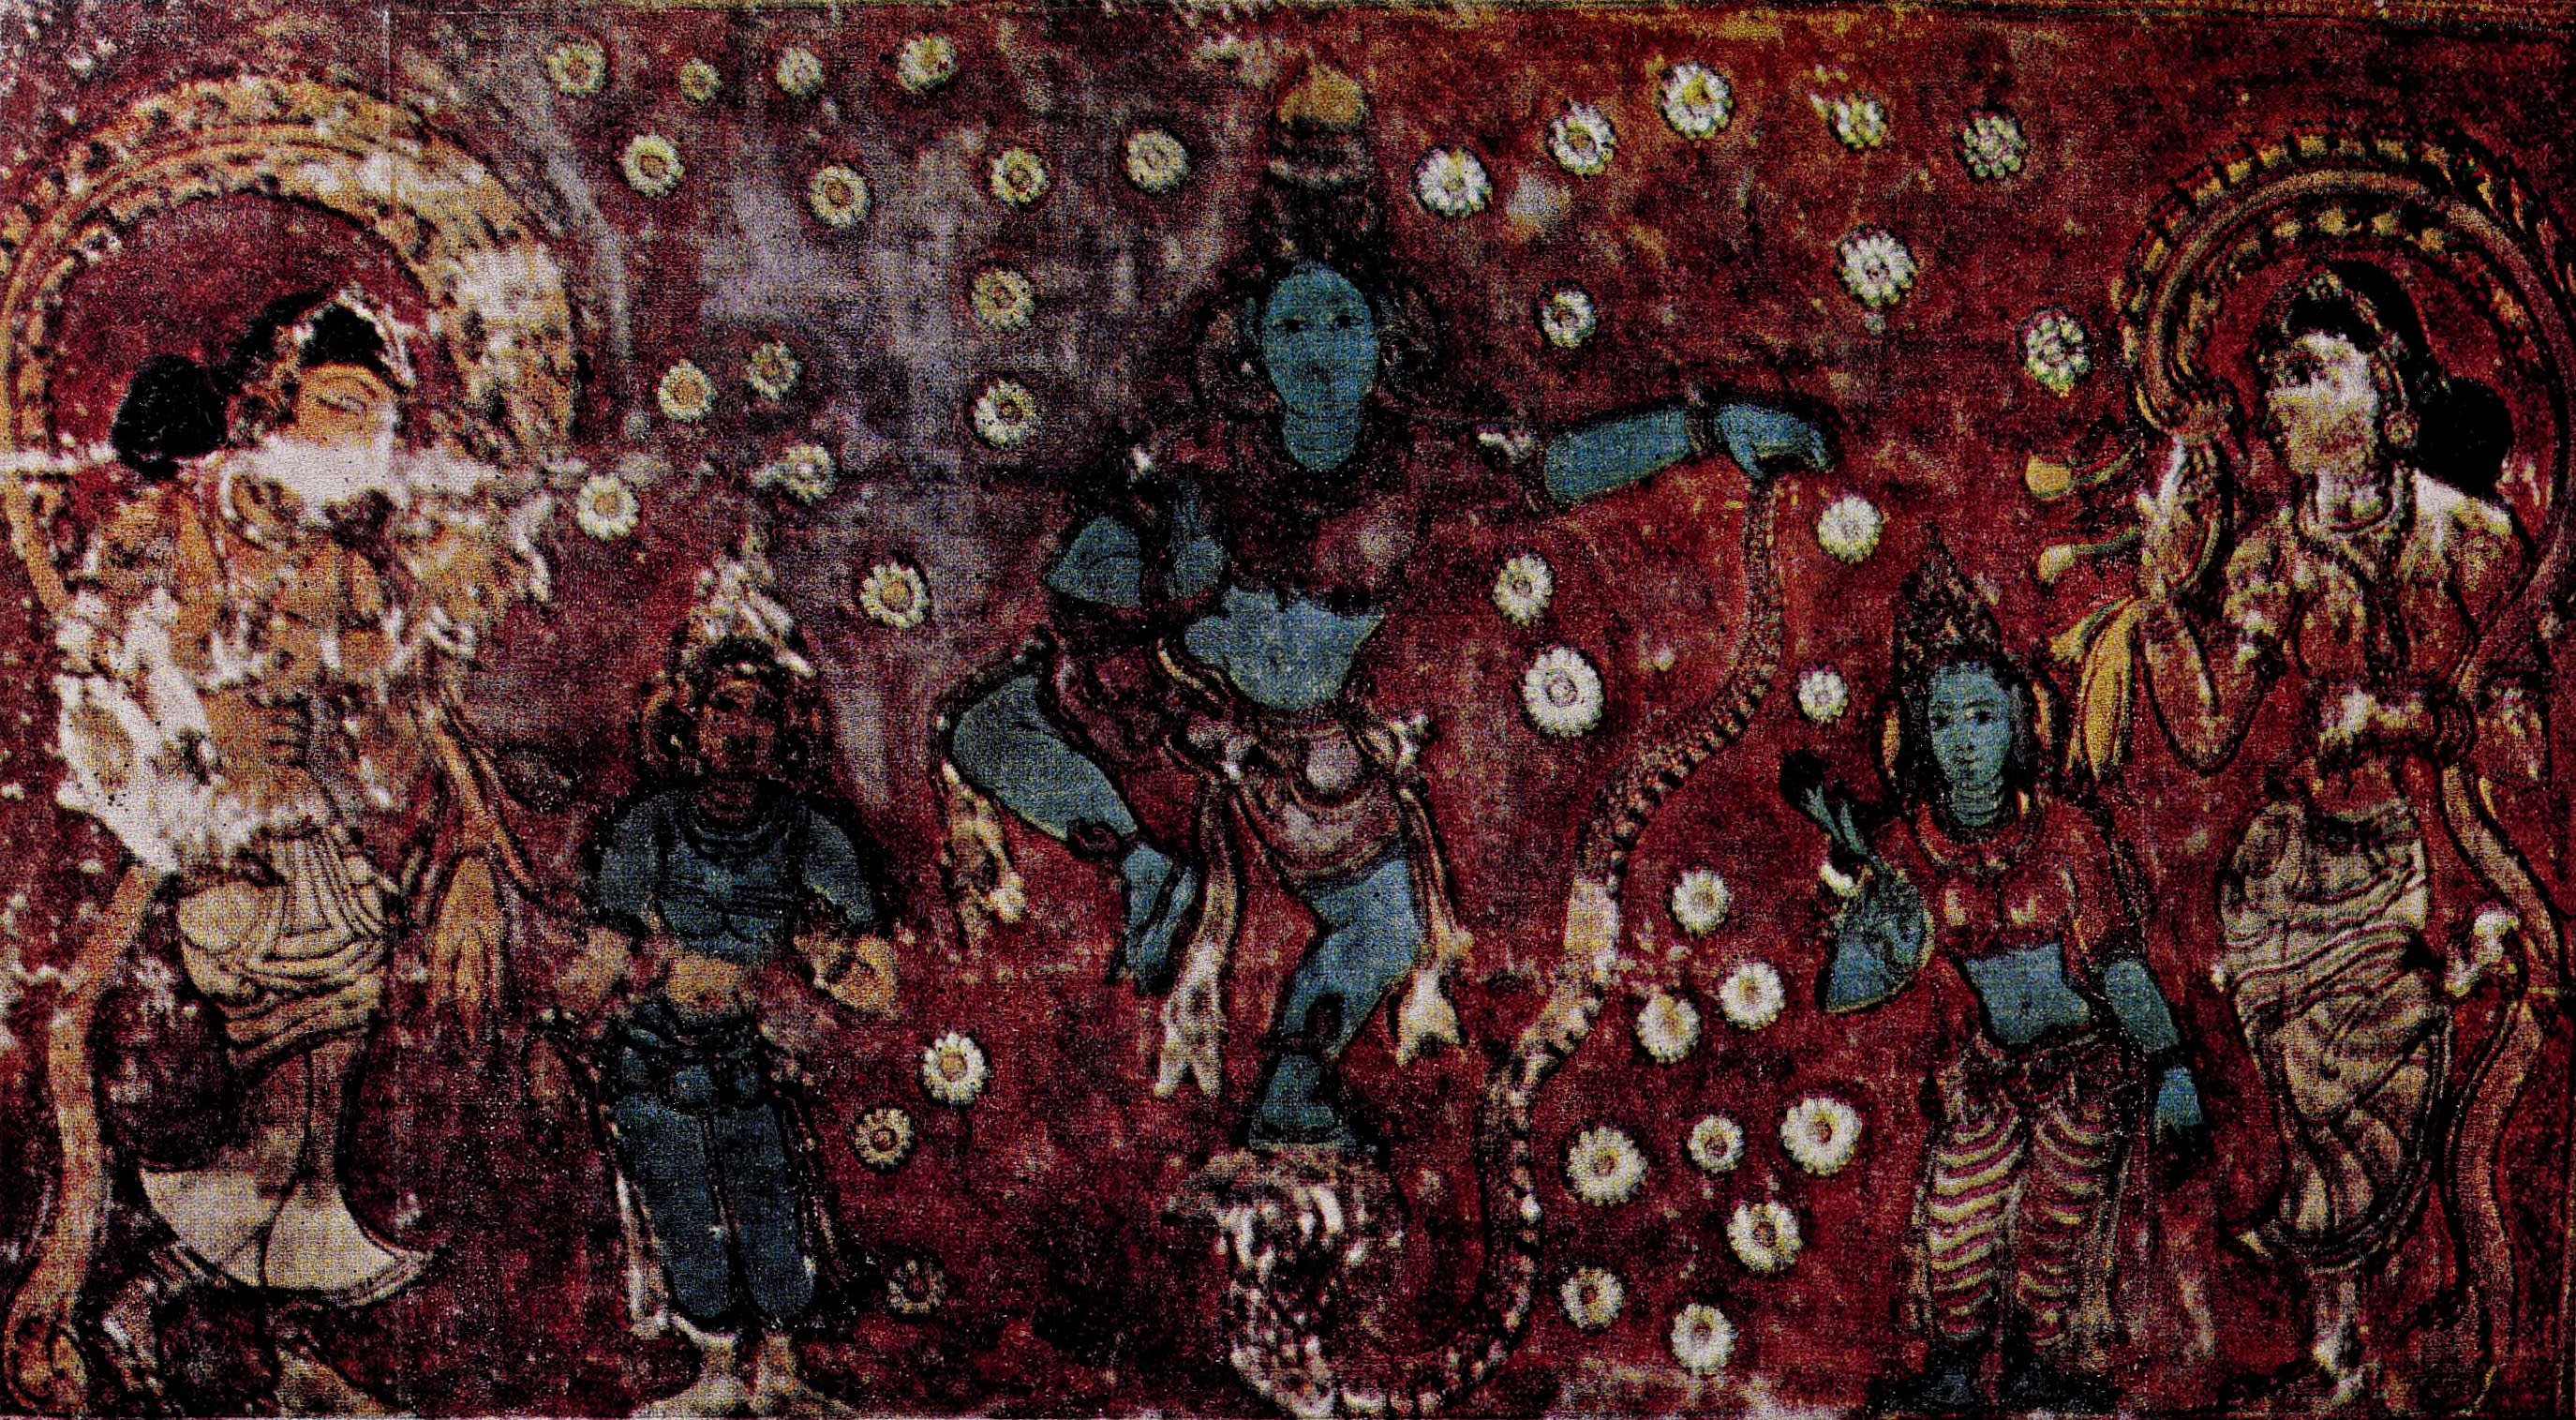 Plate-22: Kaliya Krishna